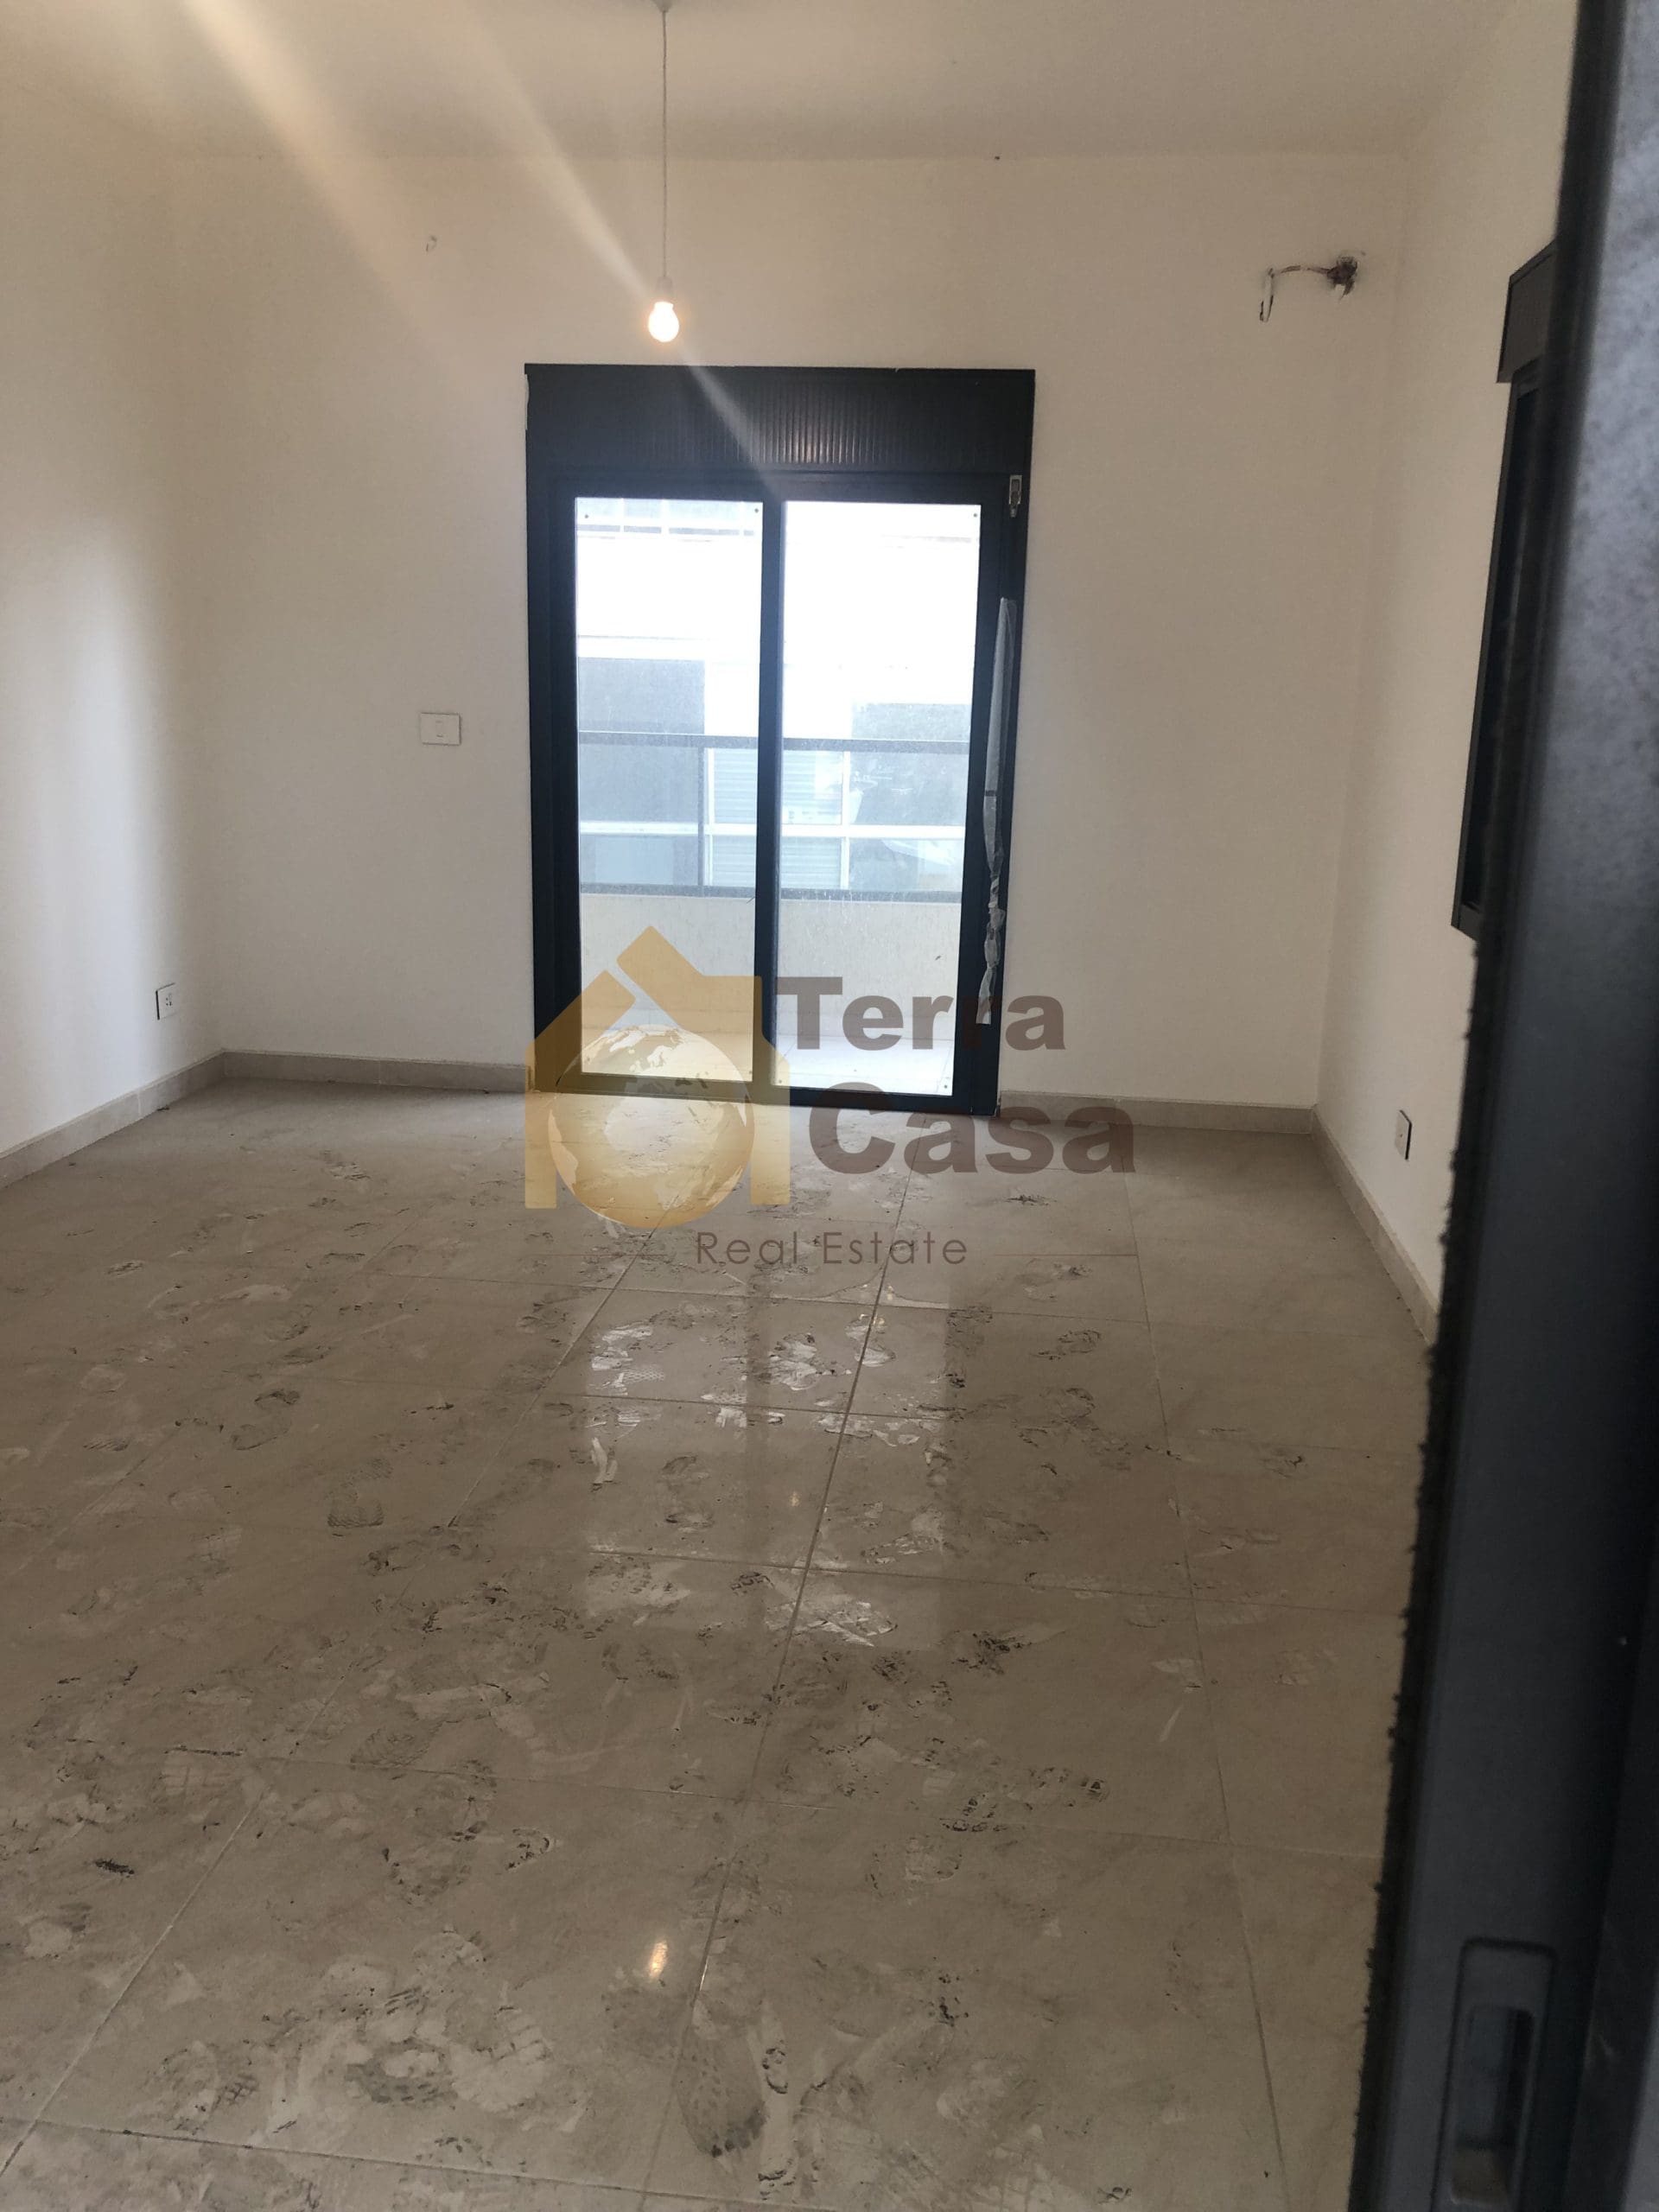 New apartment in kfarchima, sea view Ref#3718